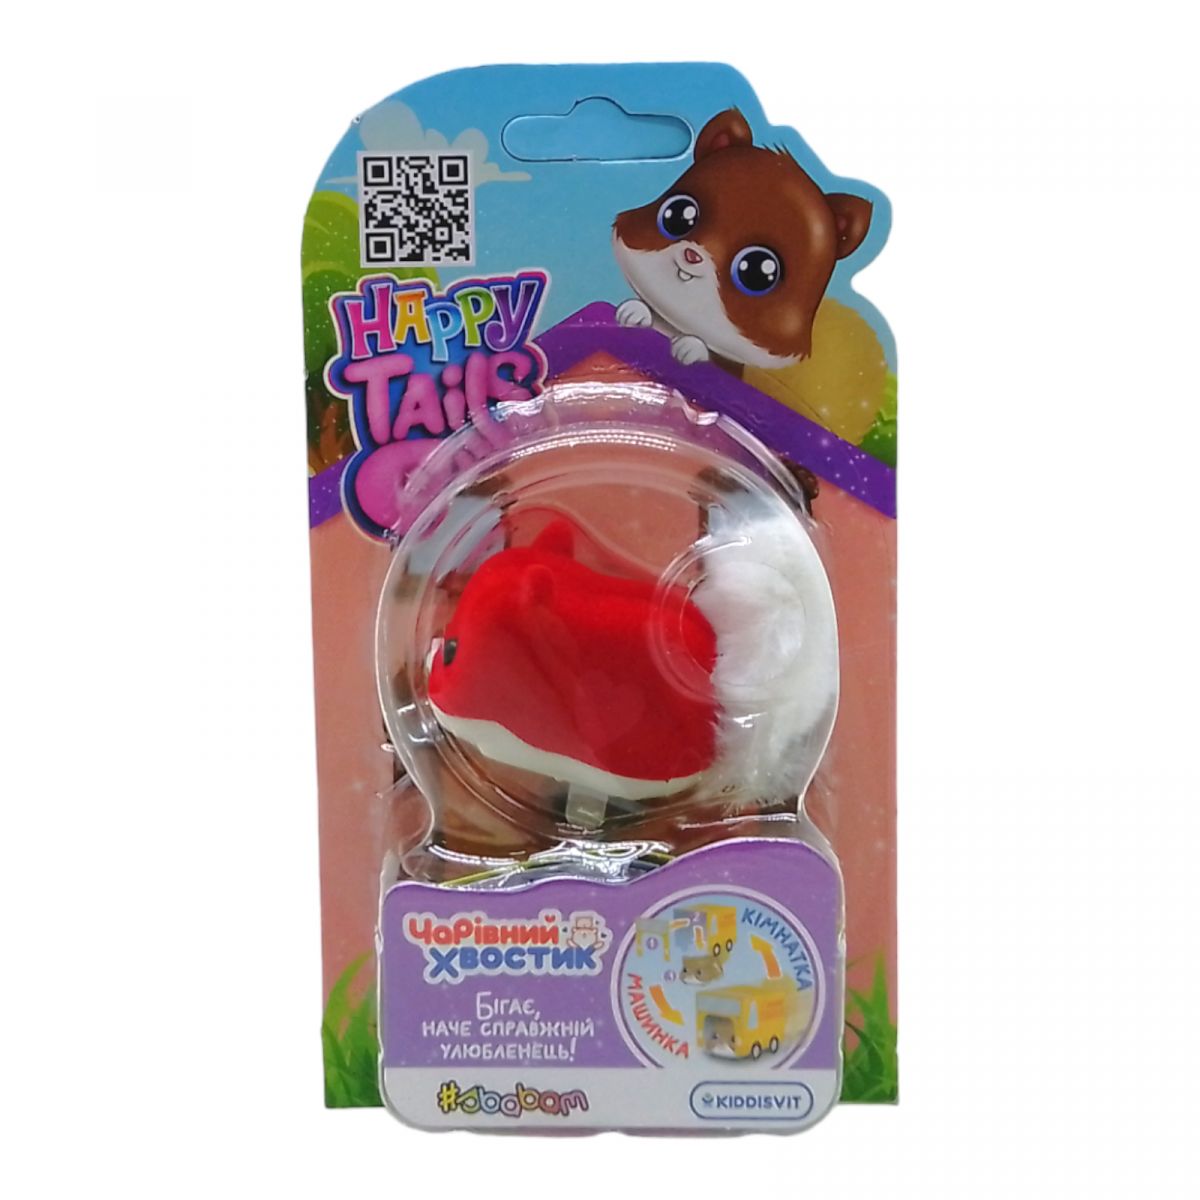 Интерактивная игрушка Happy Tails" – Волшебный хвостик" Пон-Пон